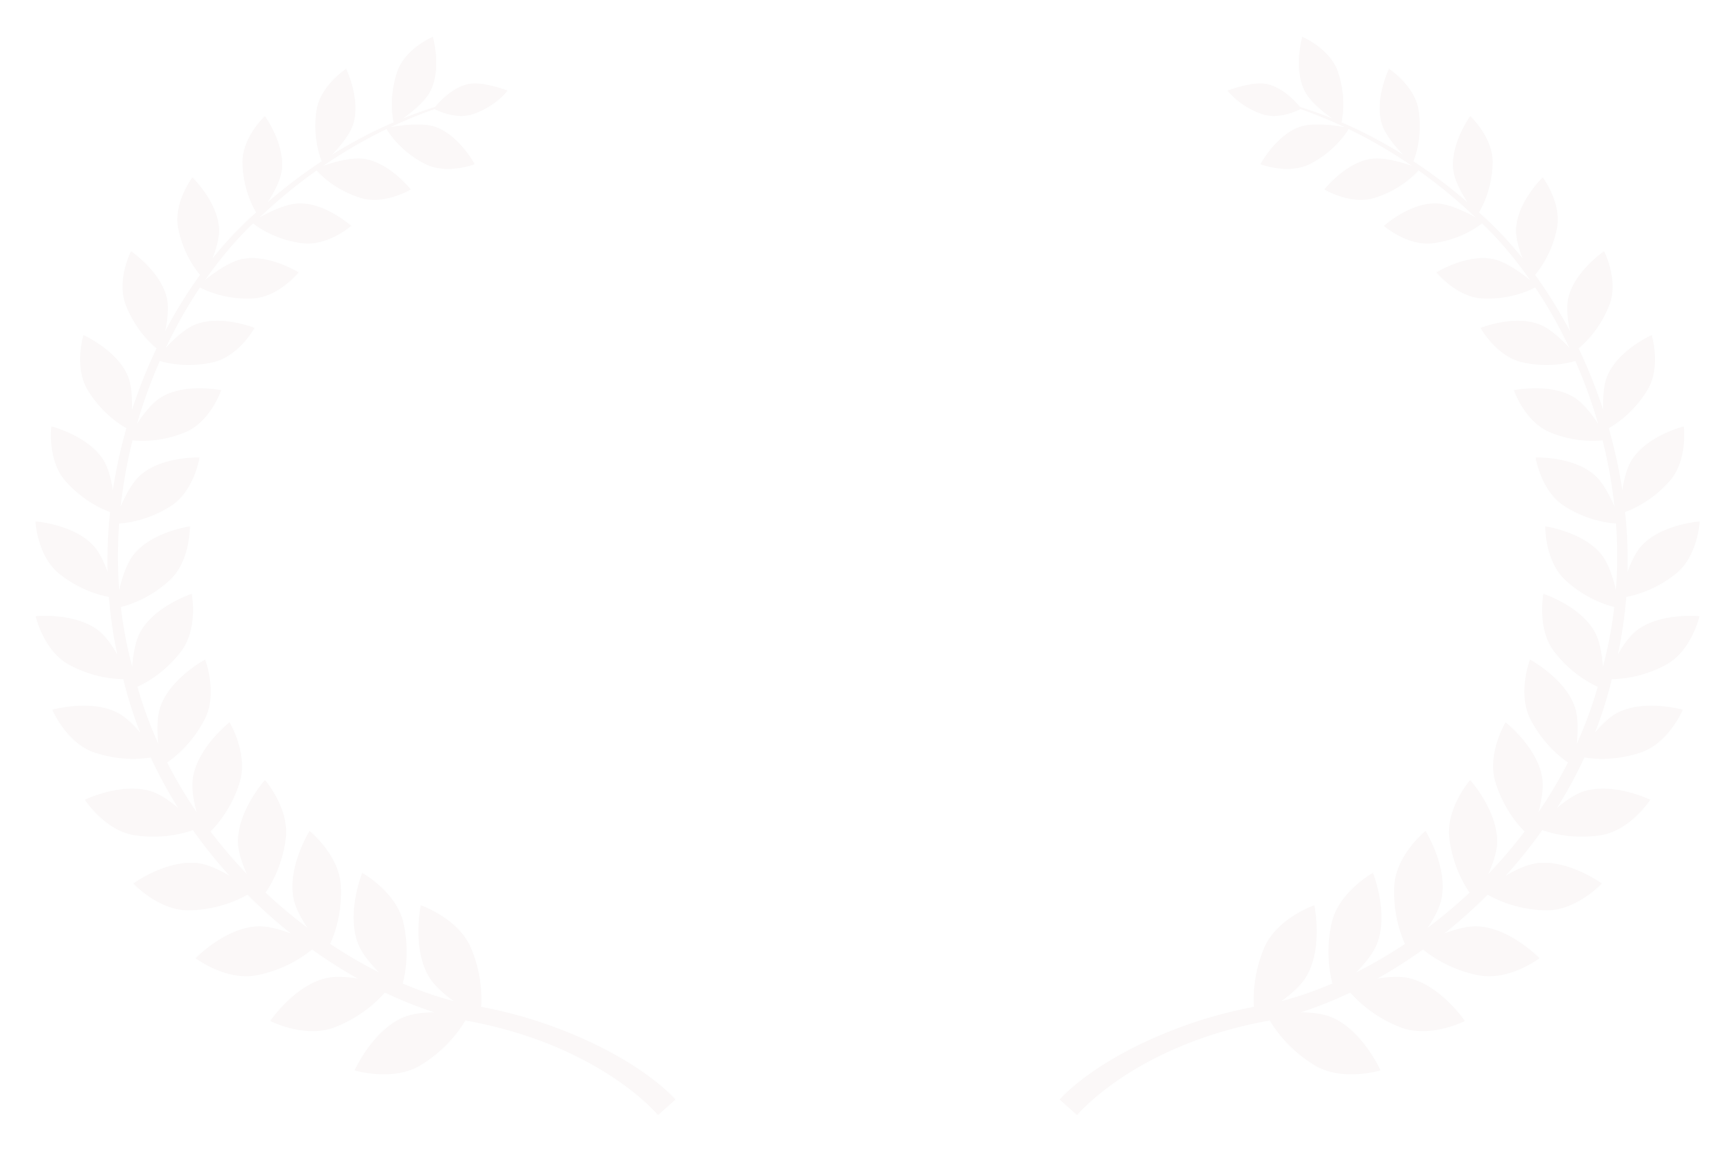 OFFICIAL SELECTION - Ji hlava International Documentary Film Festival - 2022 white.png